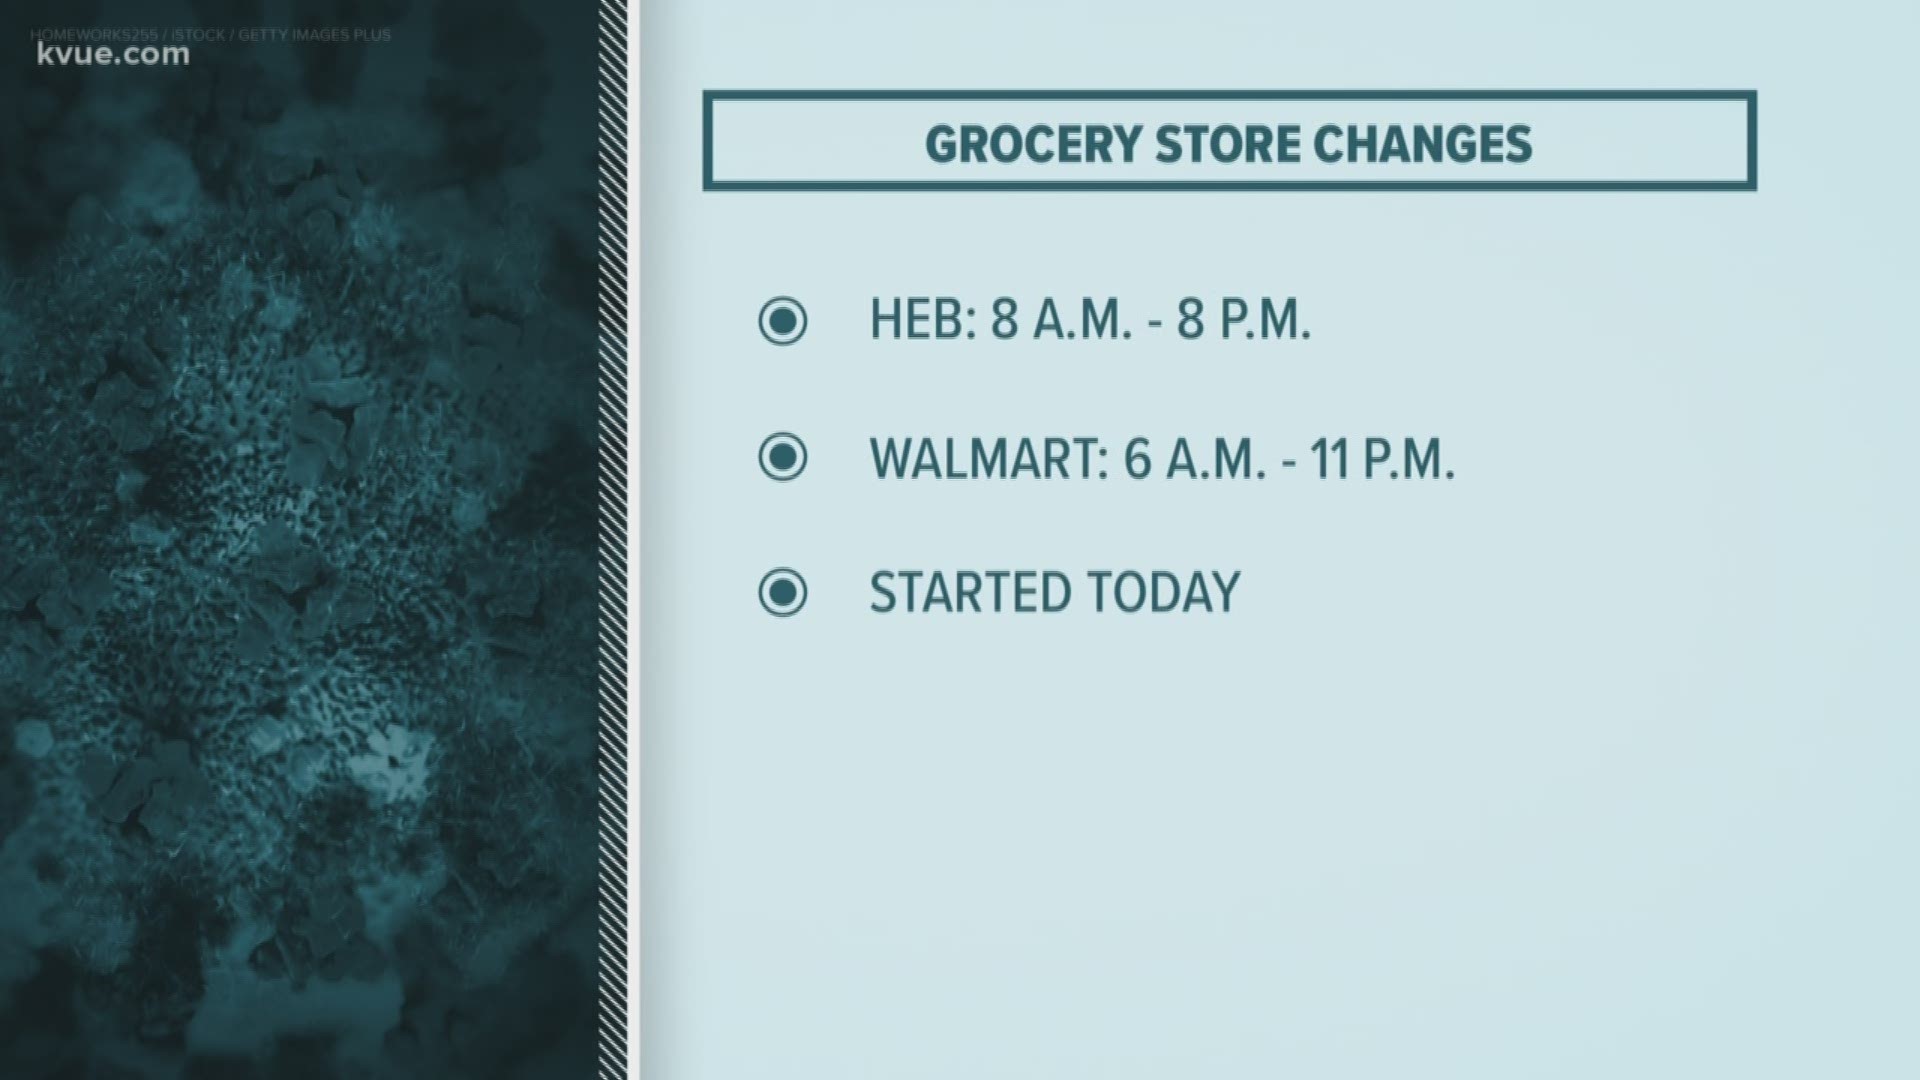 H-E-B will be open from 8 a.m. to 8 p.m. every day and most Walmart stores will be open from 6 a.m. to 11 p.m.